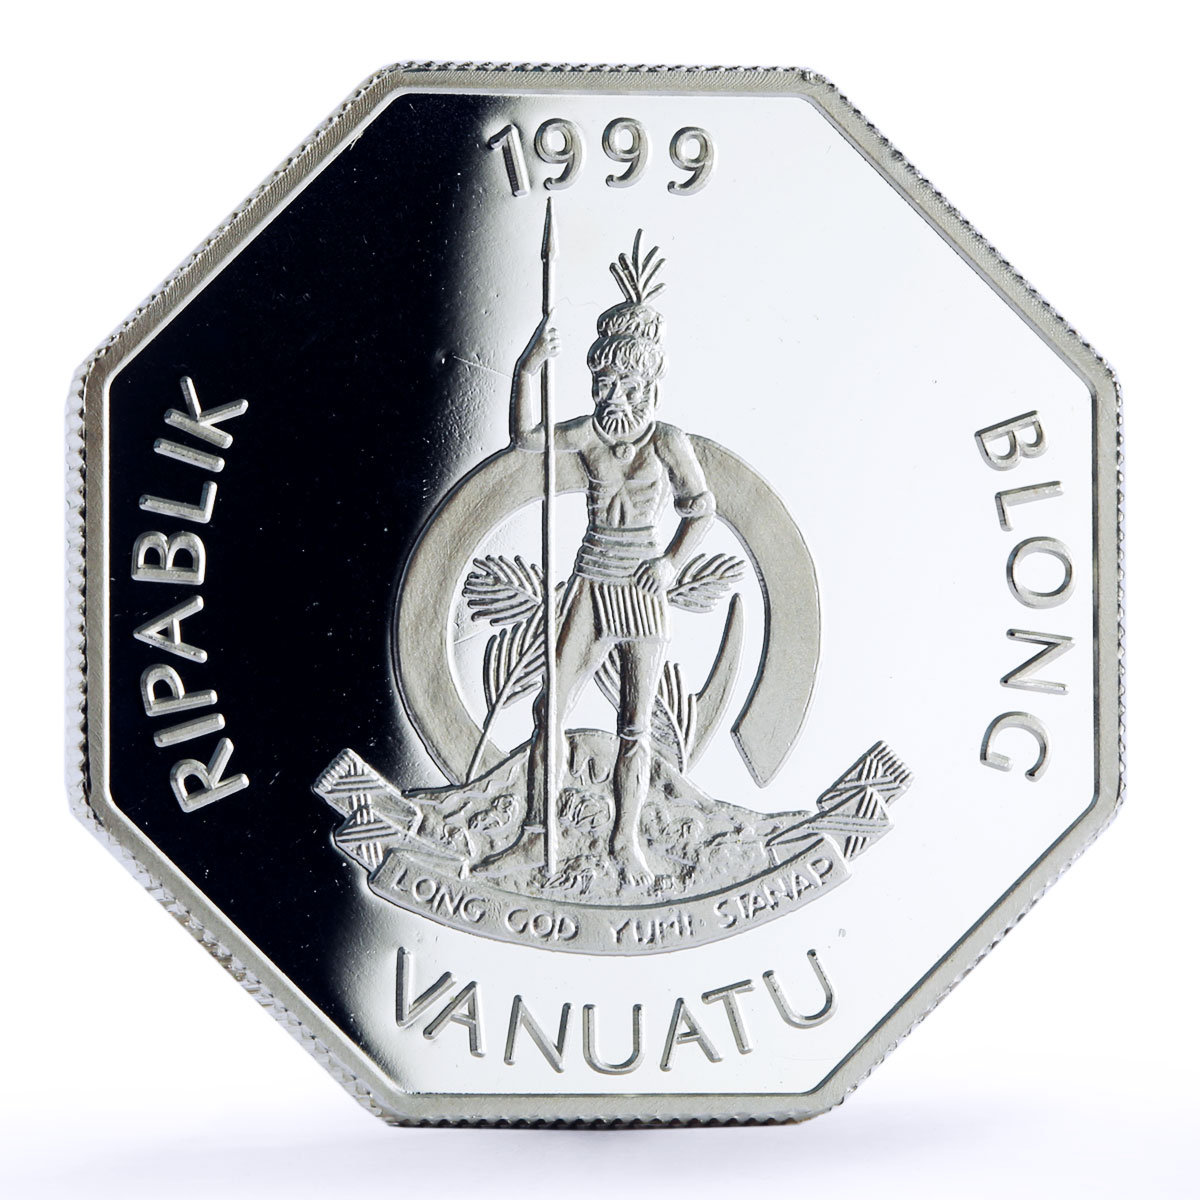 Vanuatu 50 vatu Seafaring Zelee Ship Clipper proof silver coin 1999